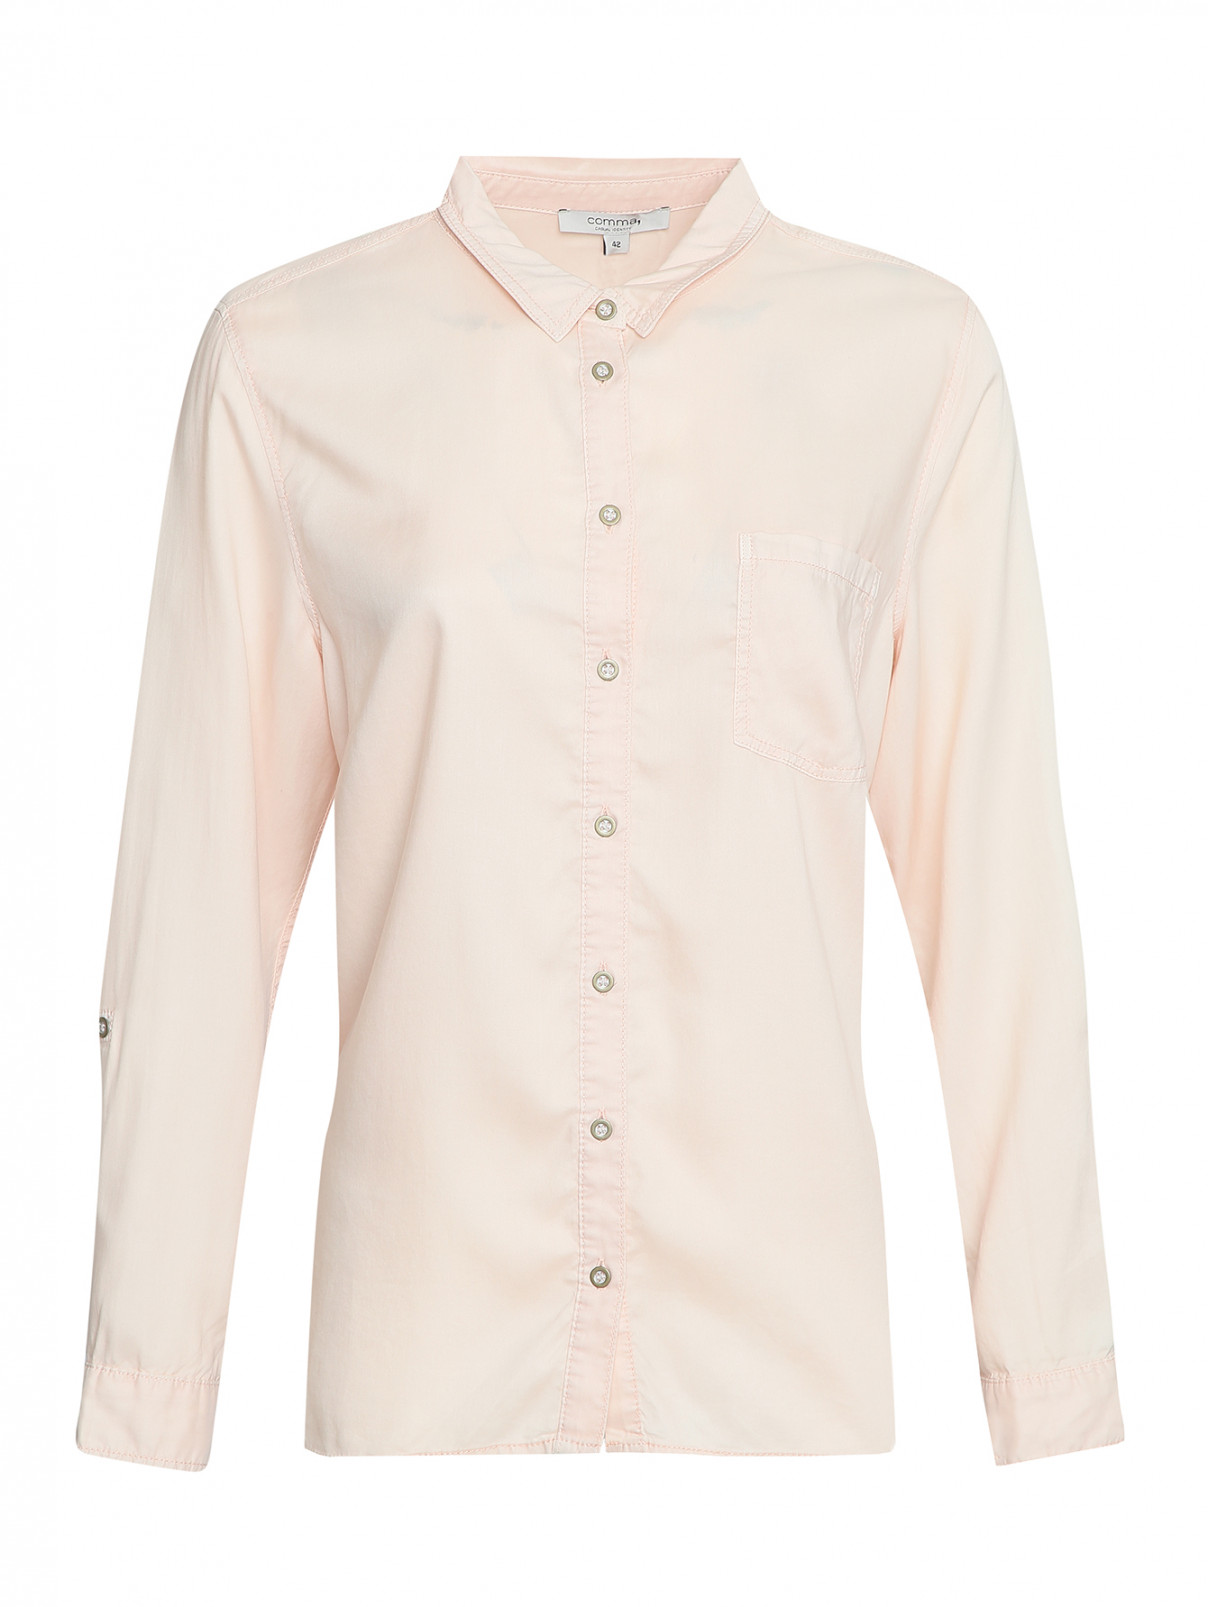 Рубашка на пуговицах с карманом Comma  –  Общий вид  – Цвет:  Розовый